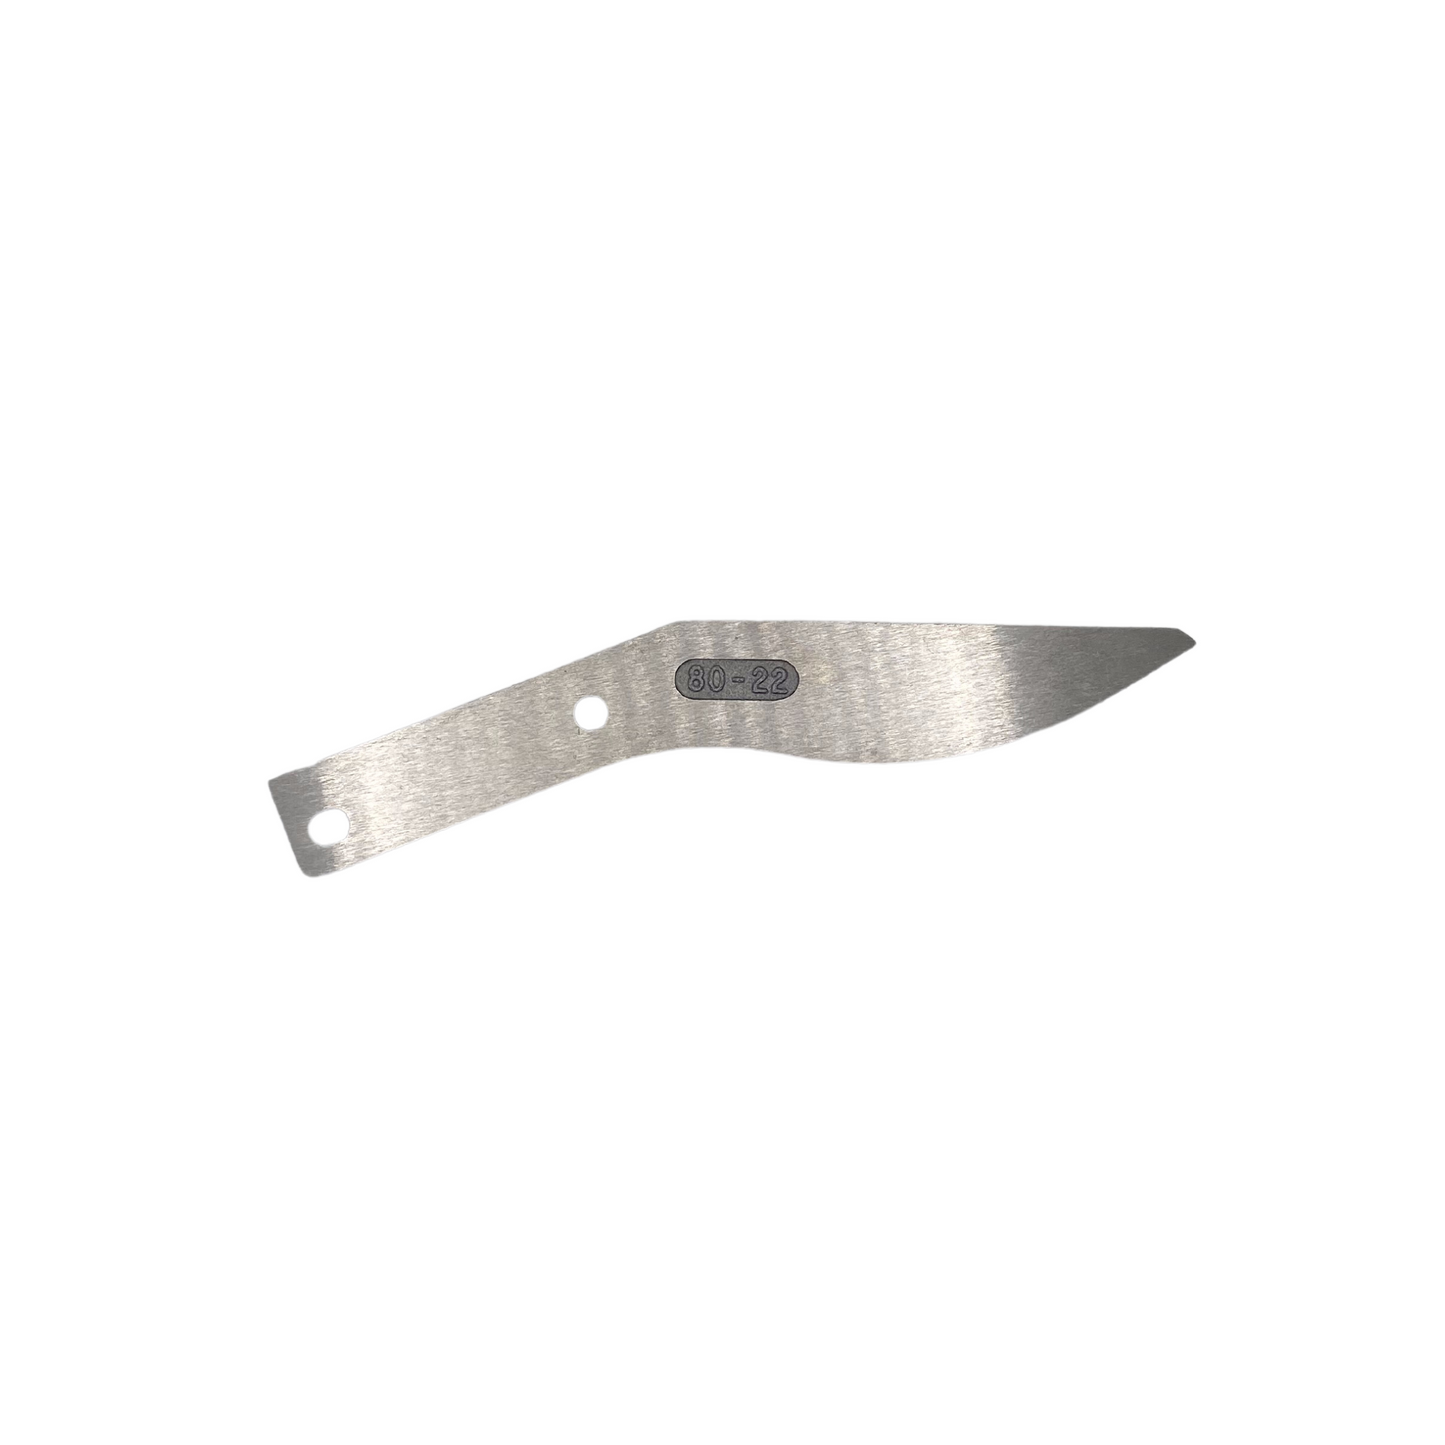 80-22 - Standard Duty Scissor Shear Side Blade